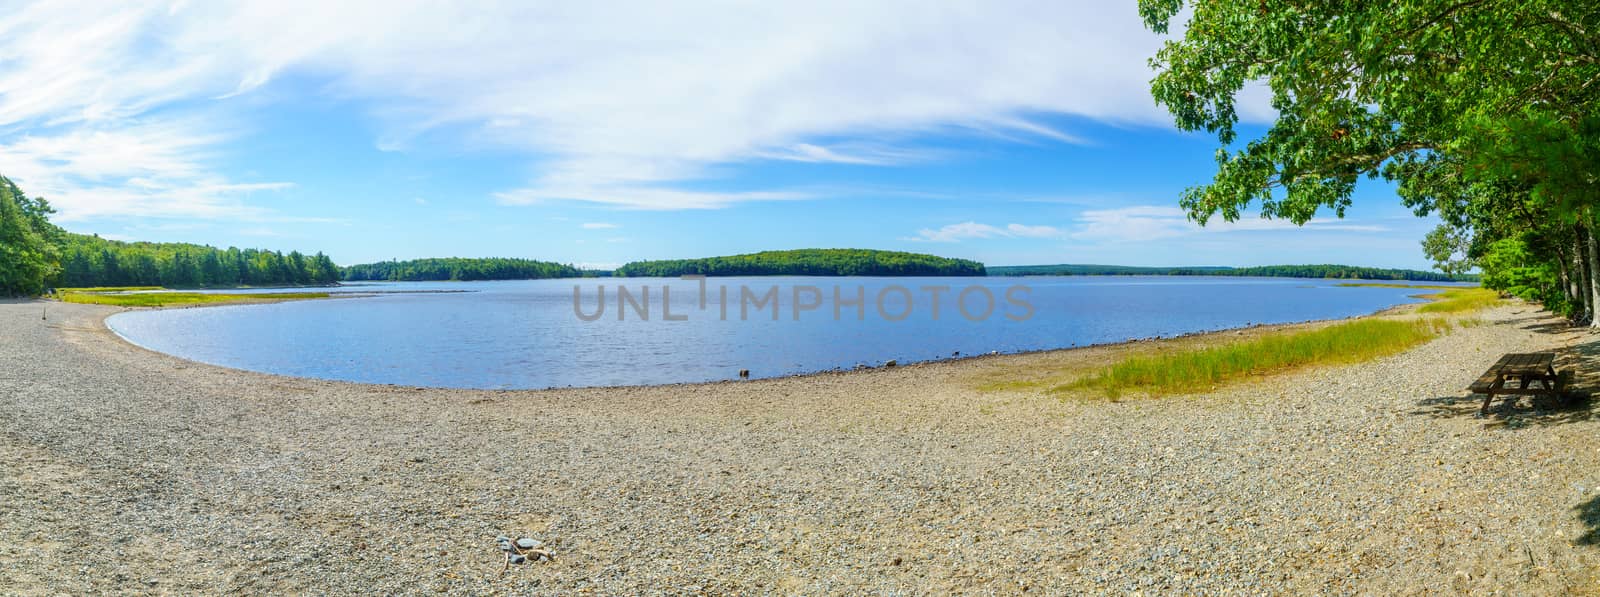 Panoramic view of the Kejimkujik Lake and beach, in Kejimkujik National Park, Nova Scotia, Canada